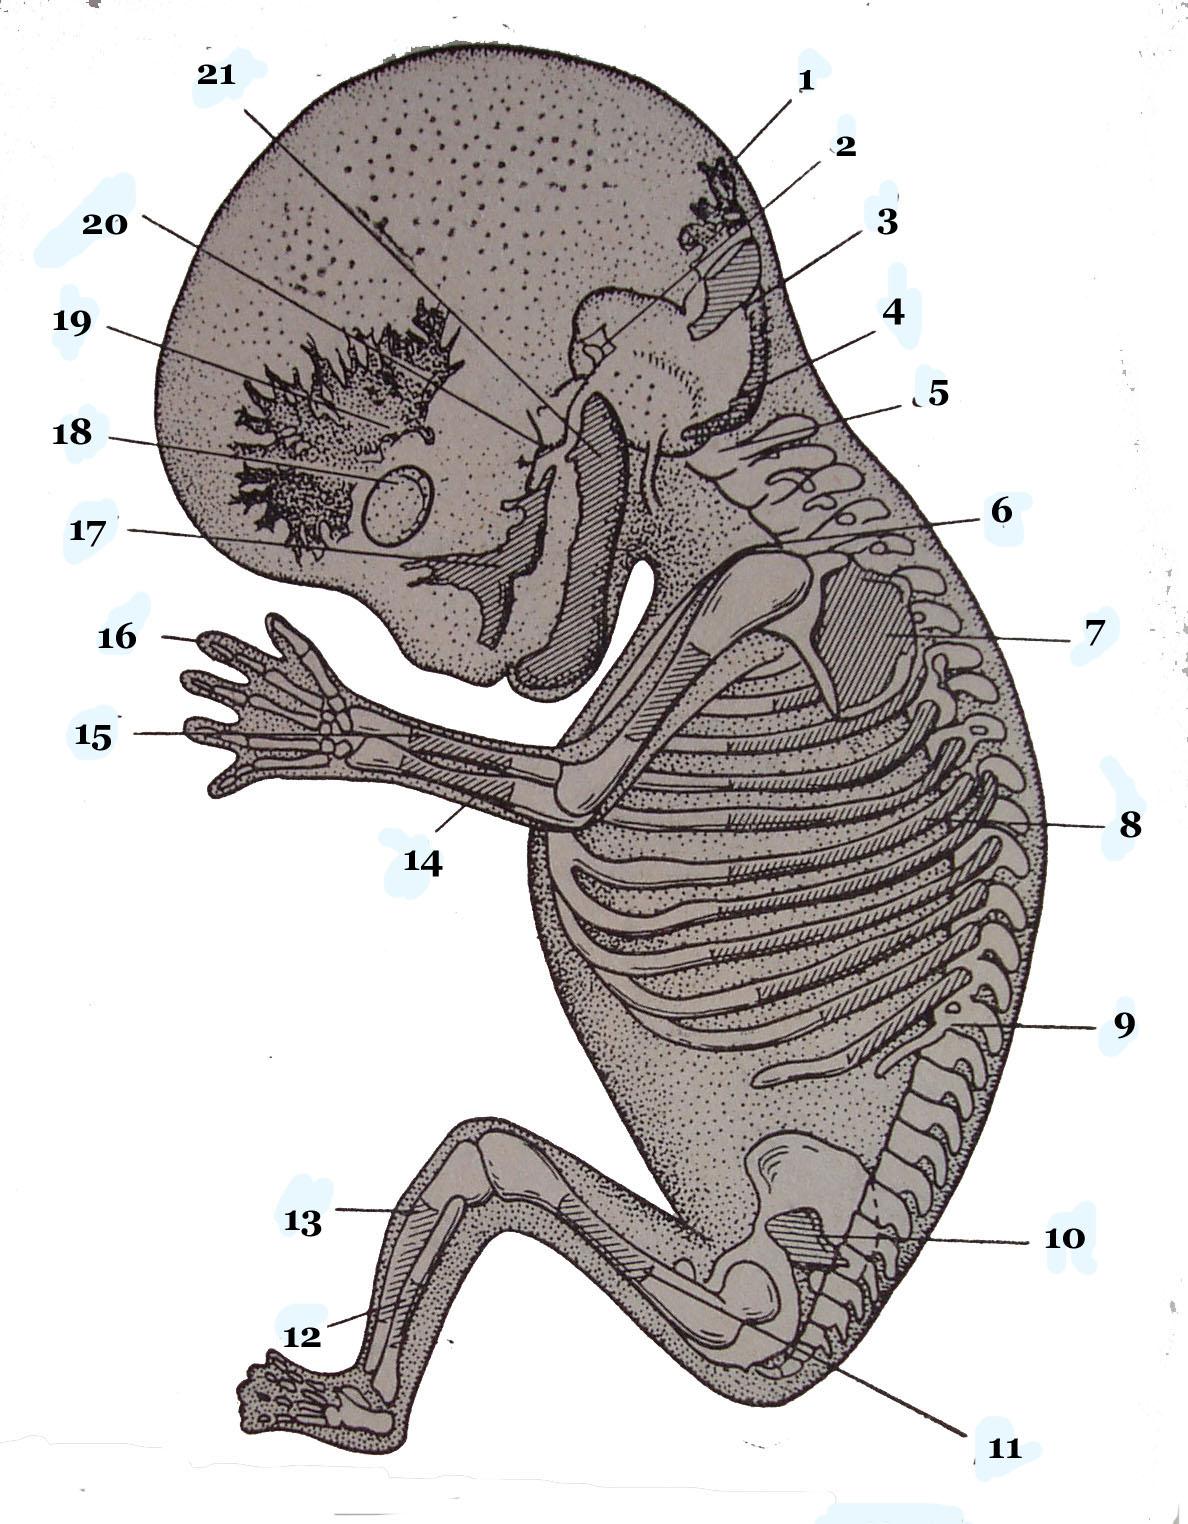 Наличие хвоста у зародыша человека на ранней. Скелет зародыша человека. Хвост у зародыша человека.